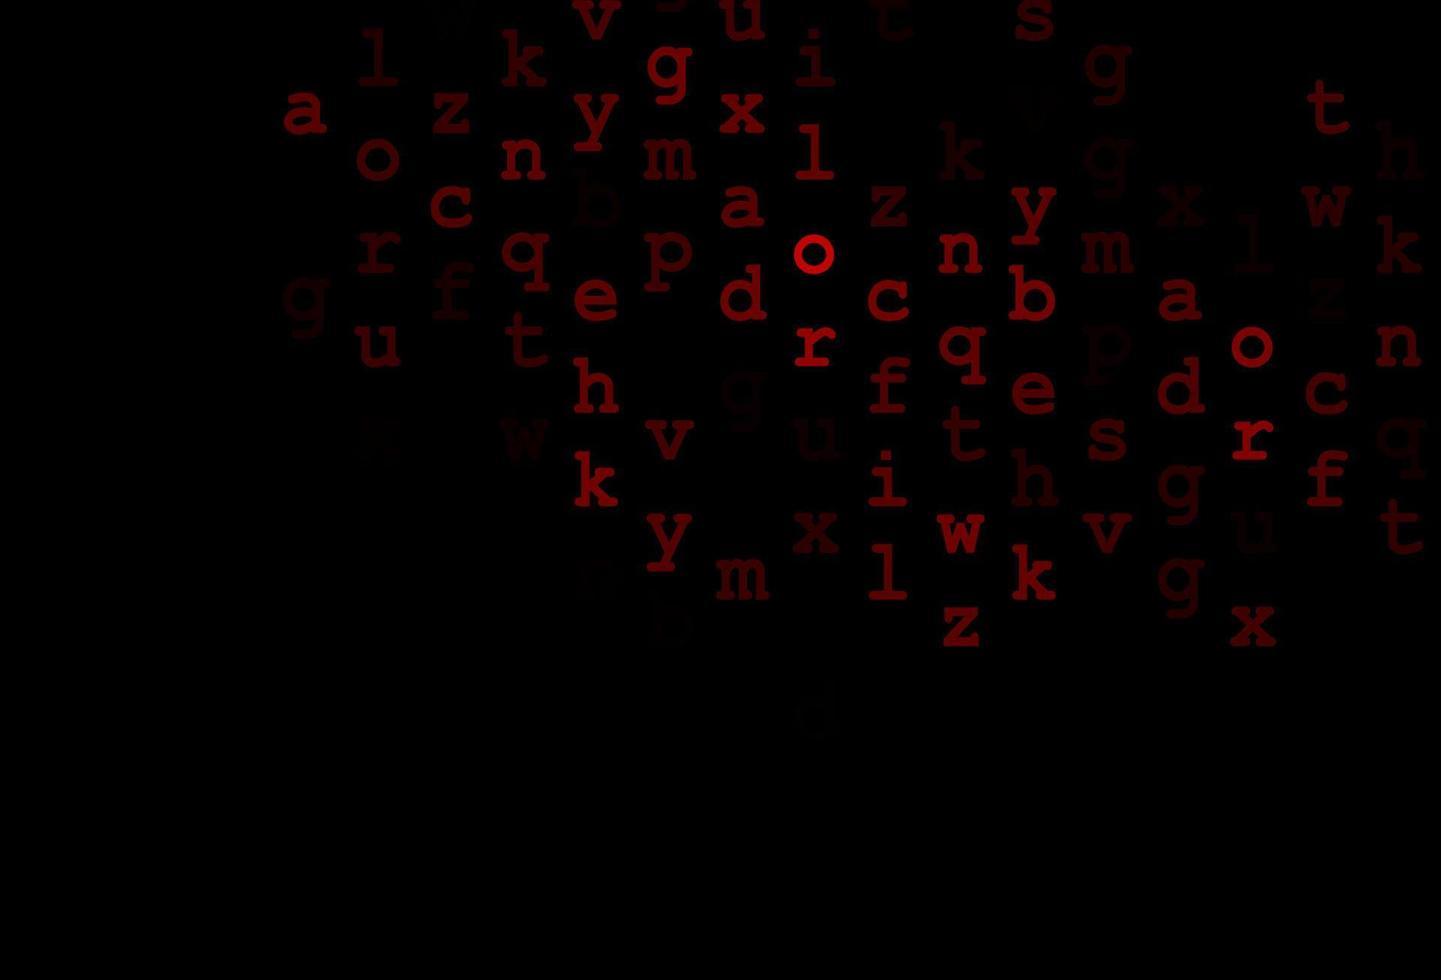 capa vermelha escura do vetor com símbolos ingleses.